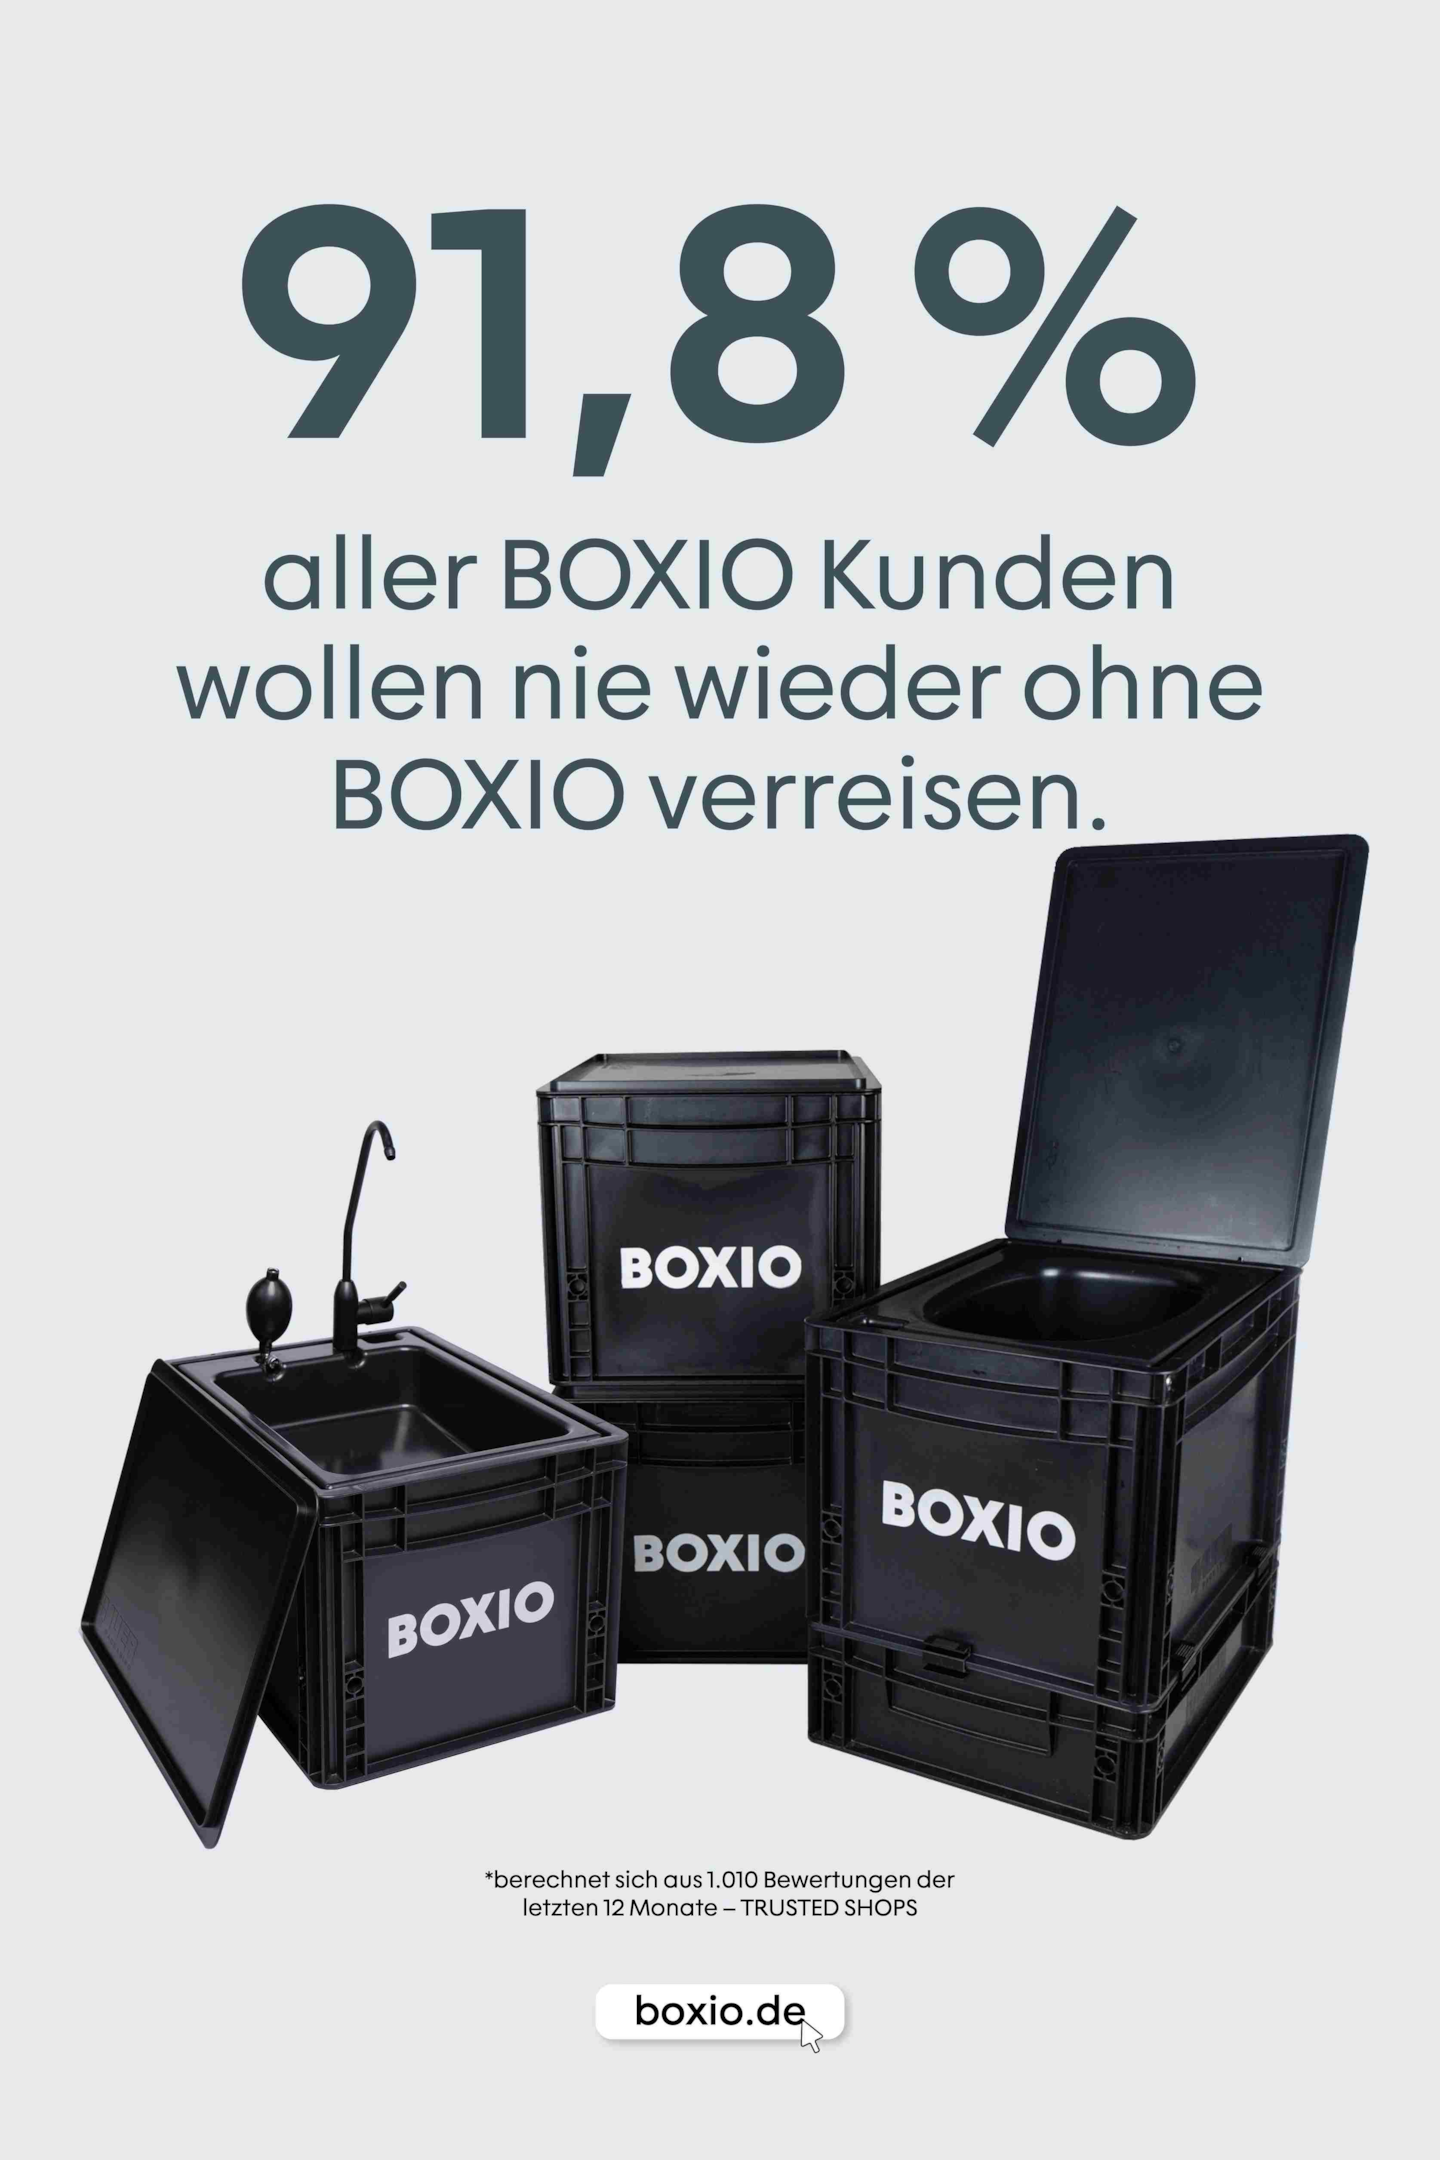  Grafik med BOXIO-Toilet og tekst: 91,8 procent af alle BOXIO-kunder vil aldrig rejse uden BOXIO igen. 